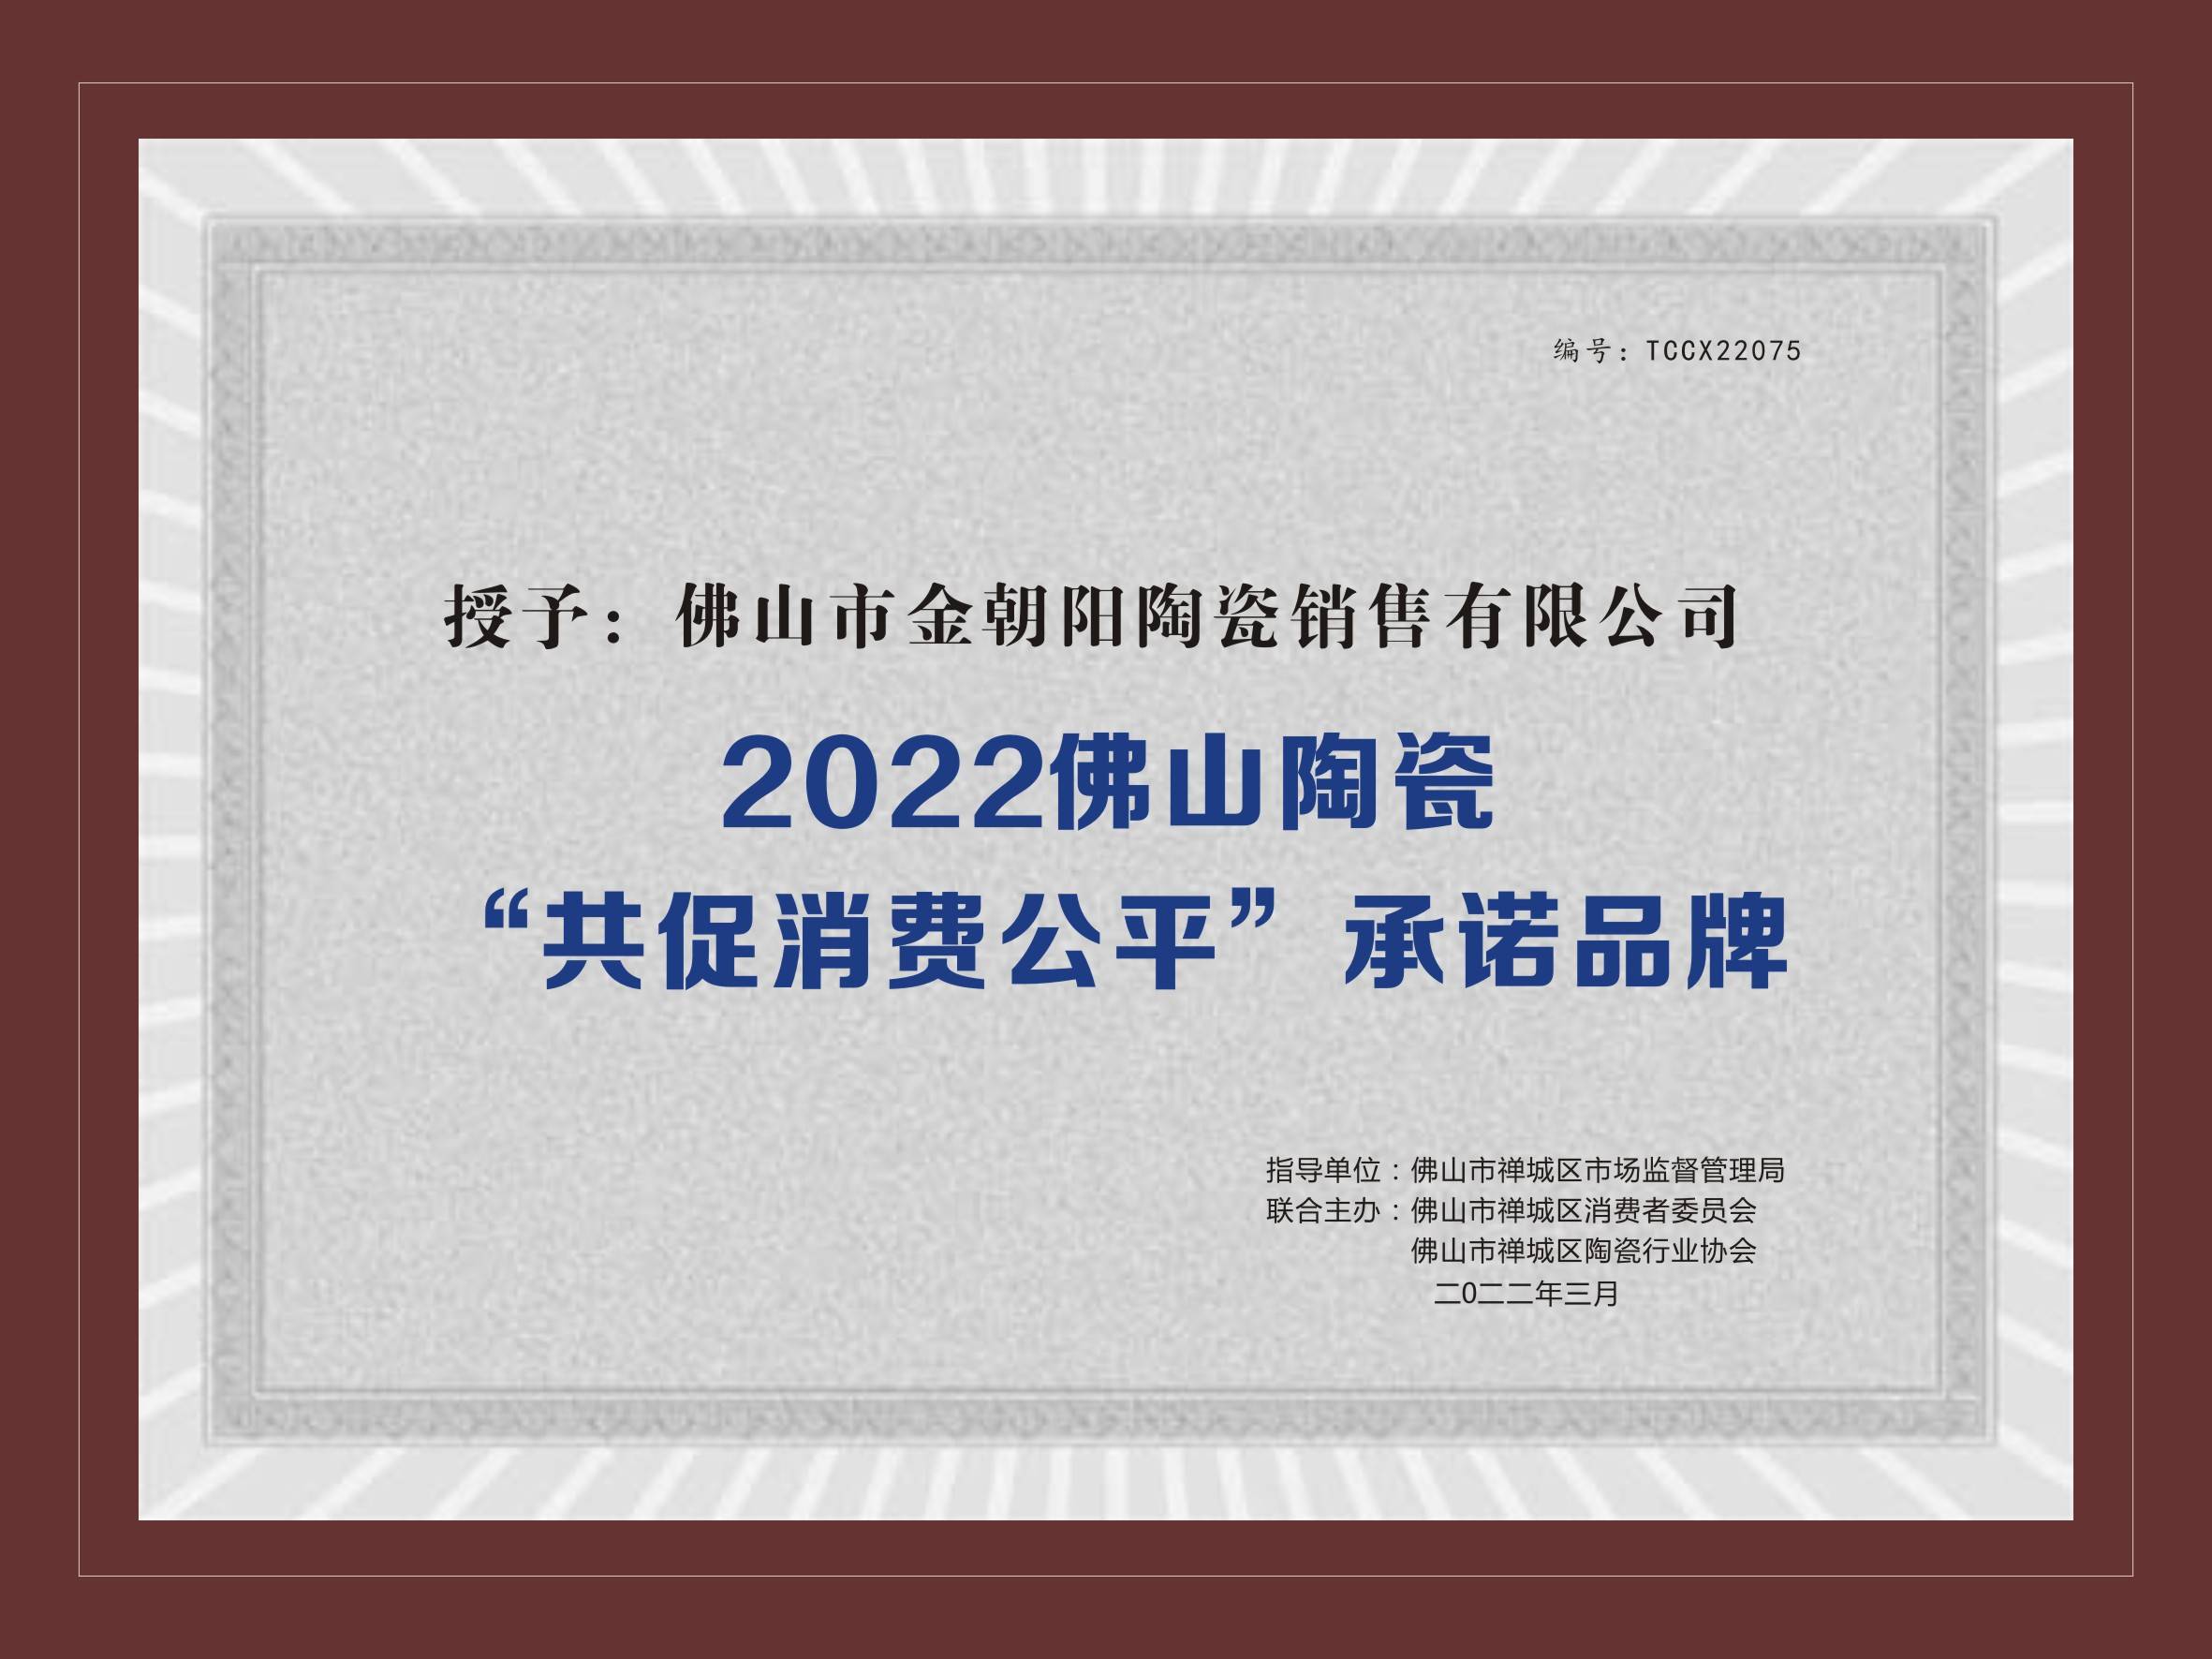 新明珠集团实力品牌金朝阳荣获2021佛山陶瓷安全达标企业等两项荣誉(图3)